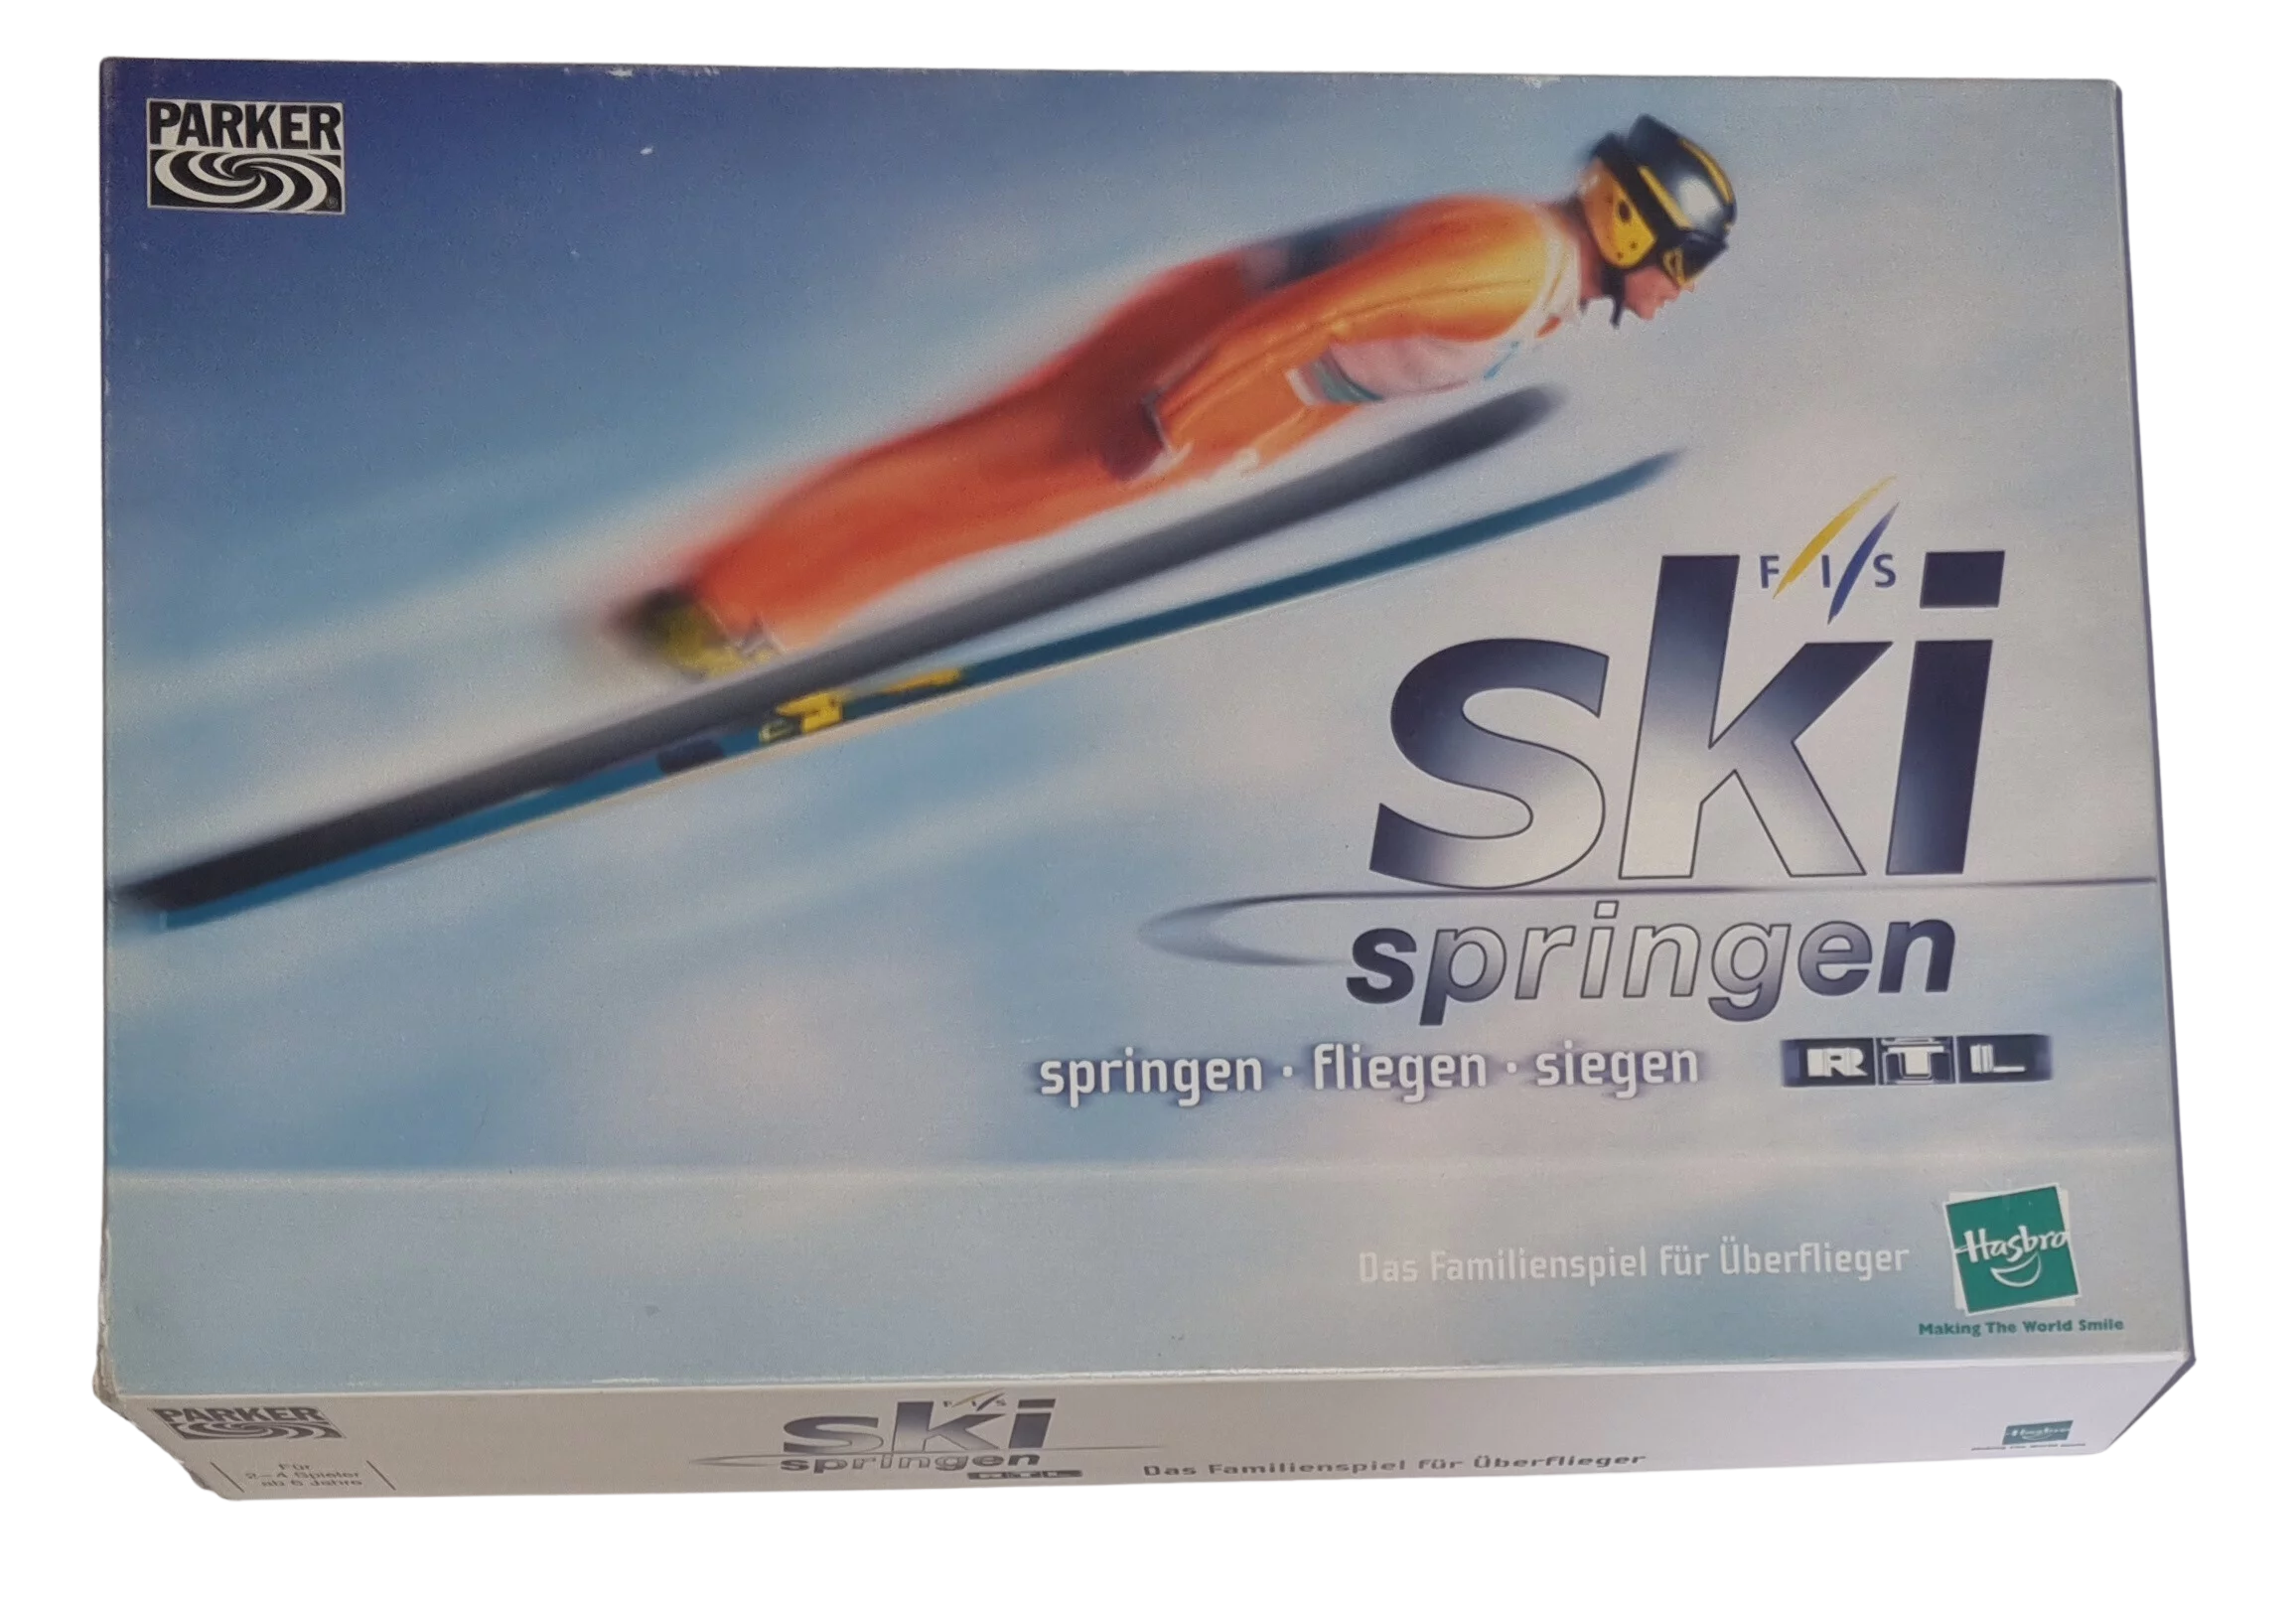 Parker Ski springen RTL